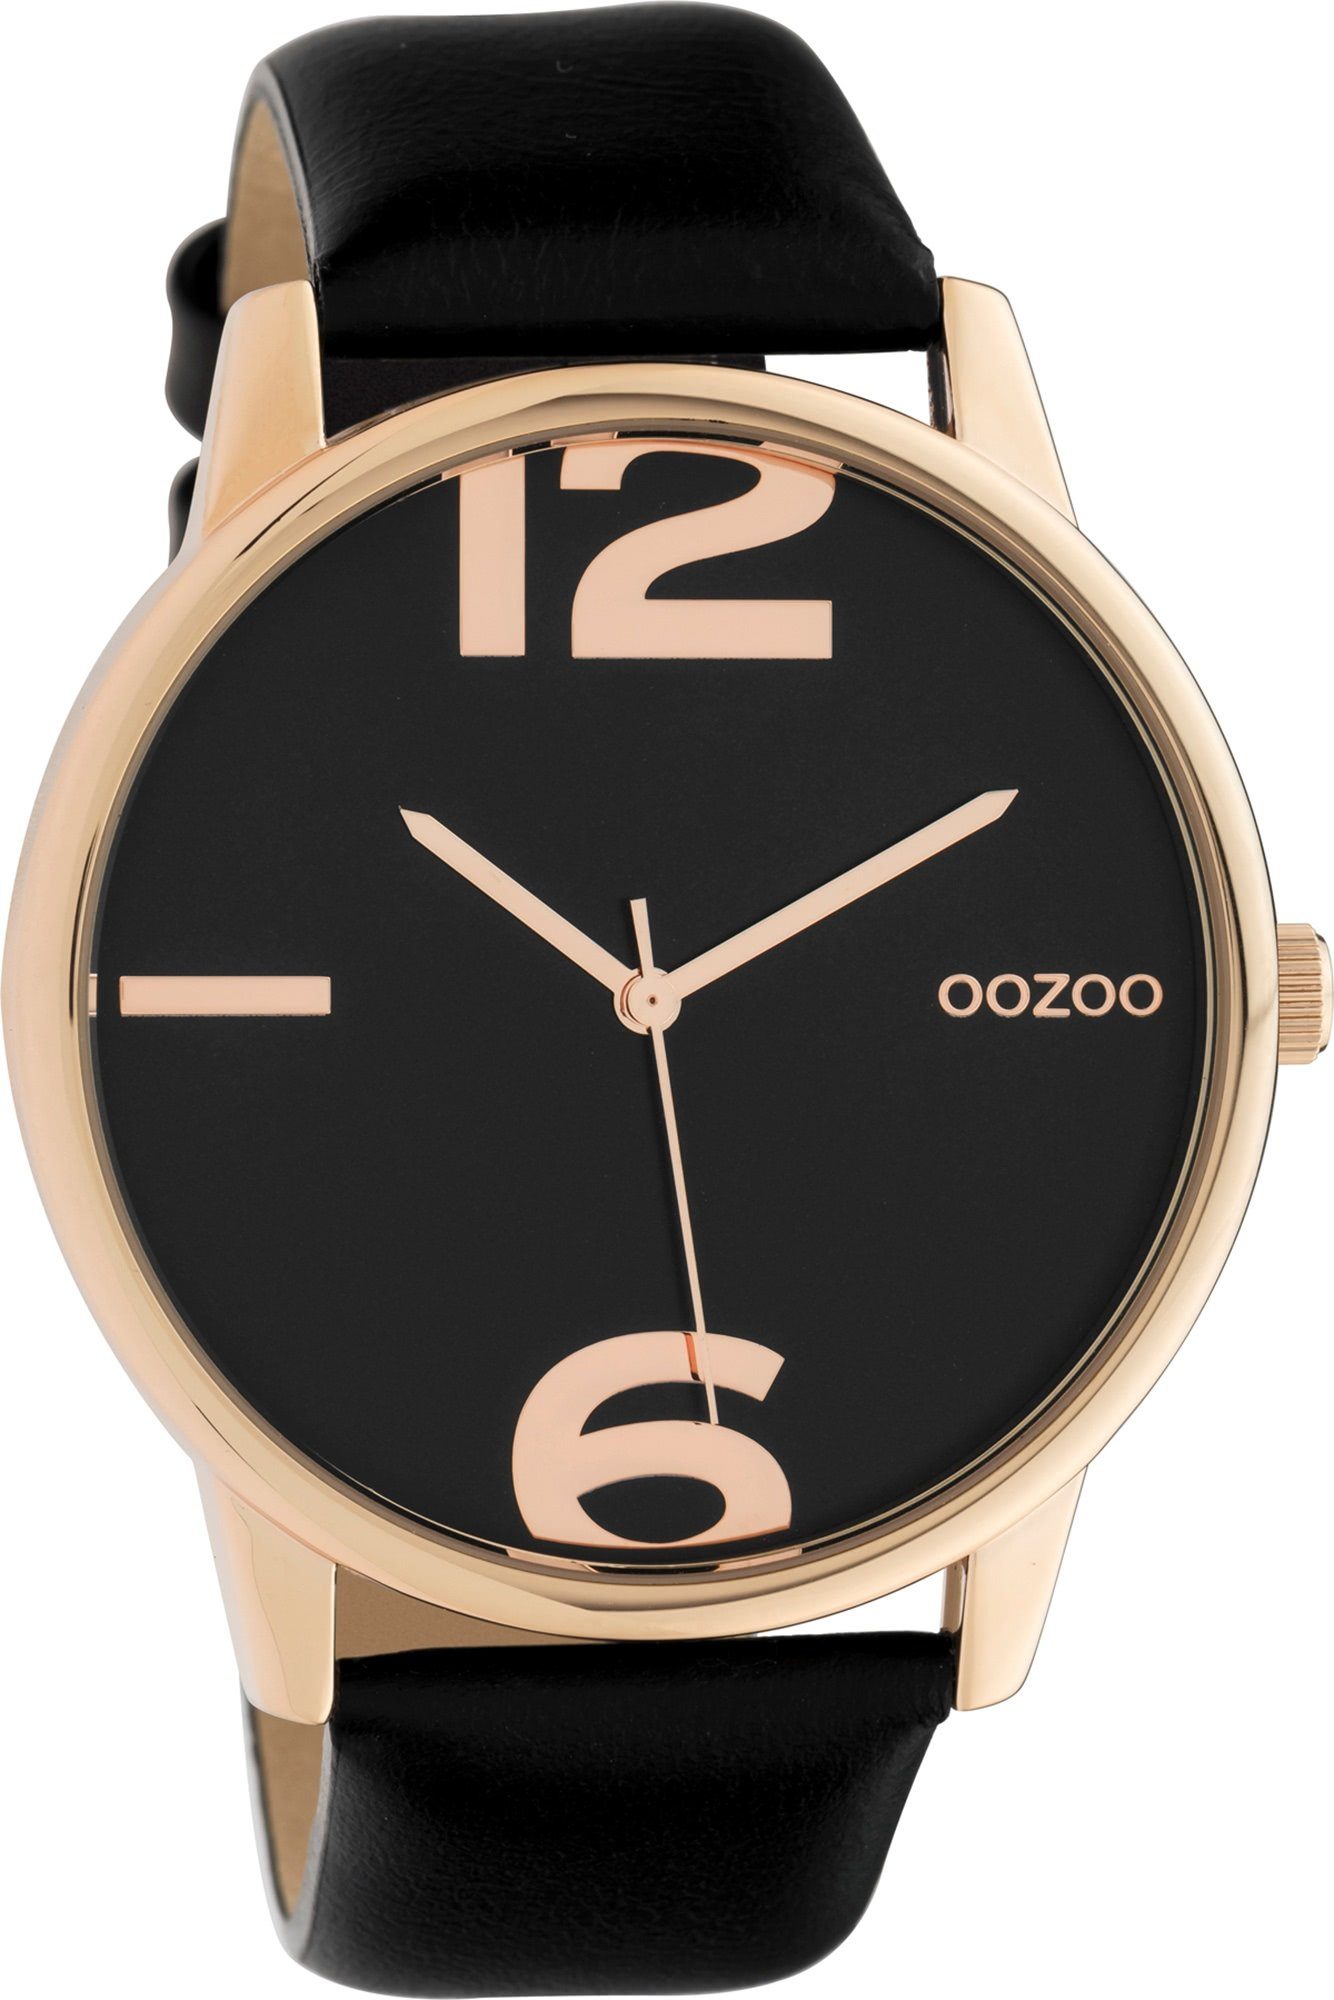 OOZOO Quarzuhr Oozoo Damen Armbanduhr schwarz Analog, Damenuhr rund, groß (ca. 45mm) Lederarmband, Fashion-Style